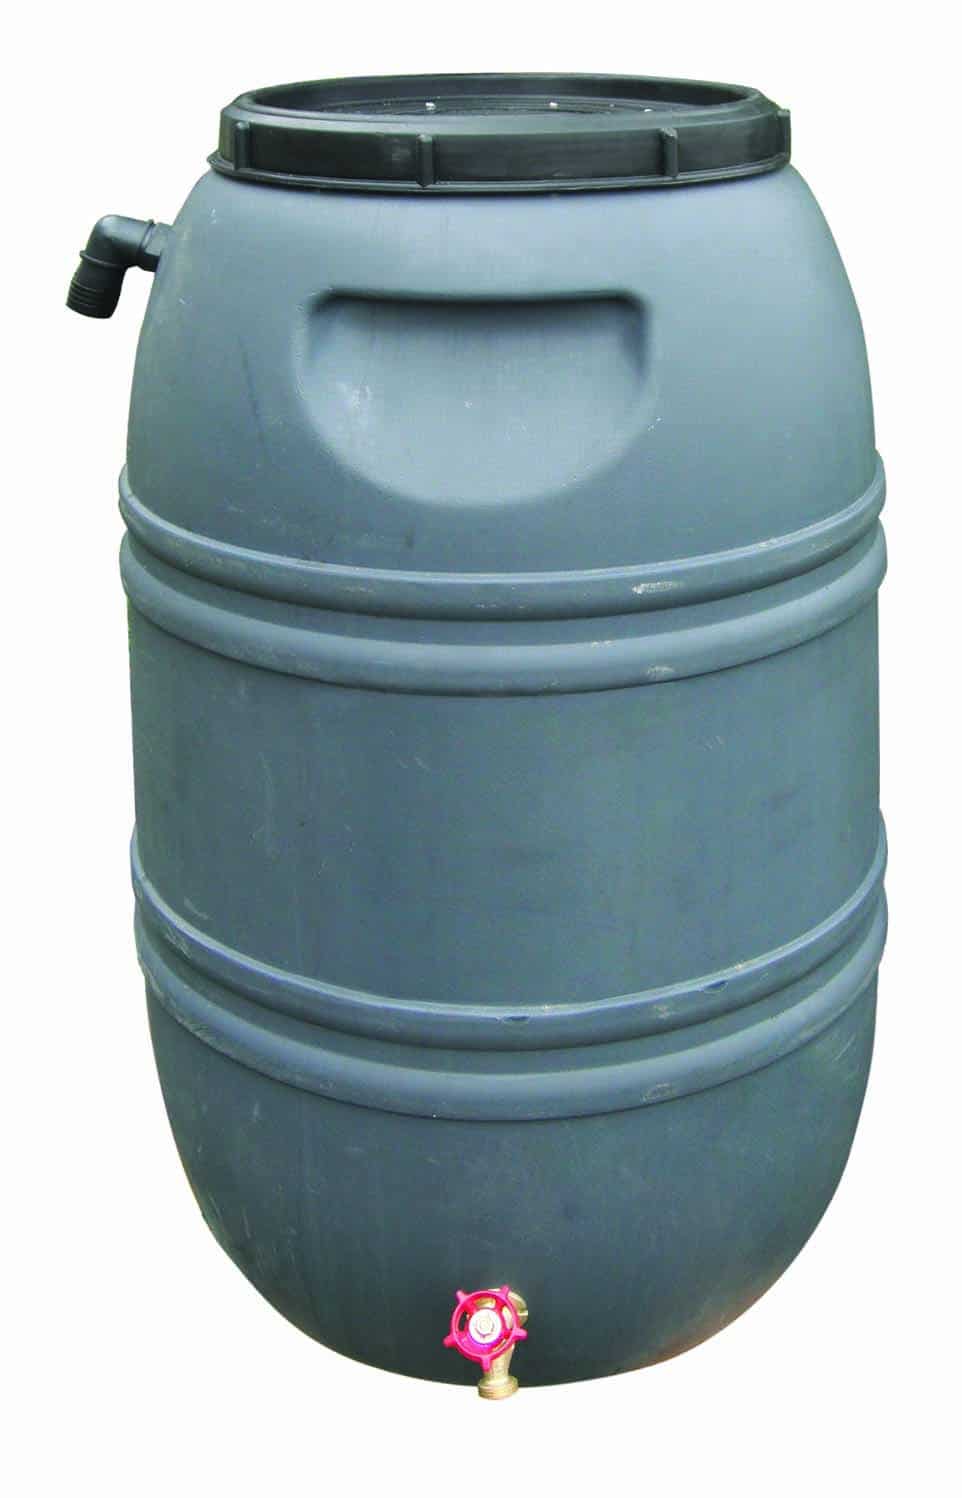 Baril collecteur d'eau avec dos plat, capcité de 50 gallons Mark's